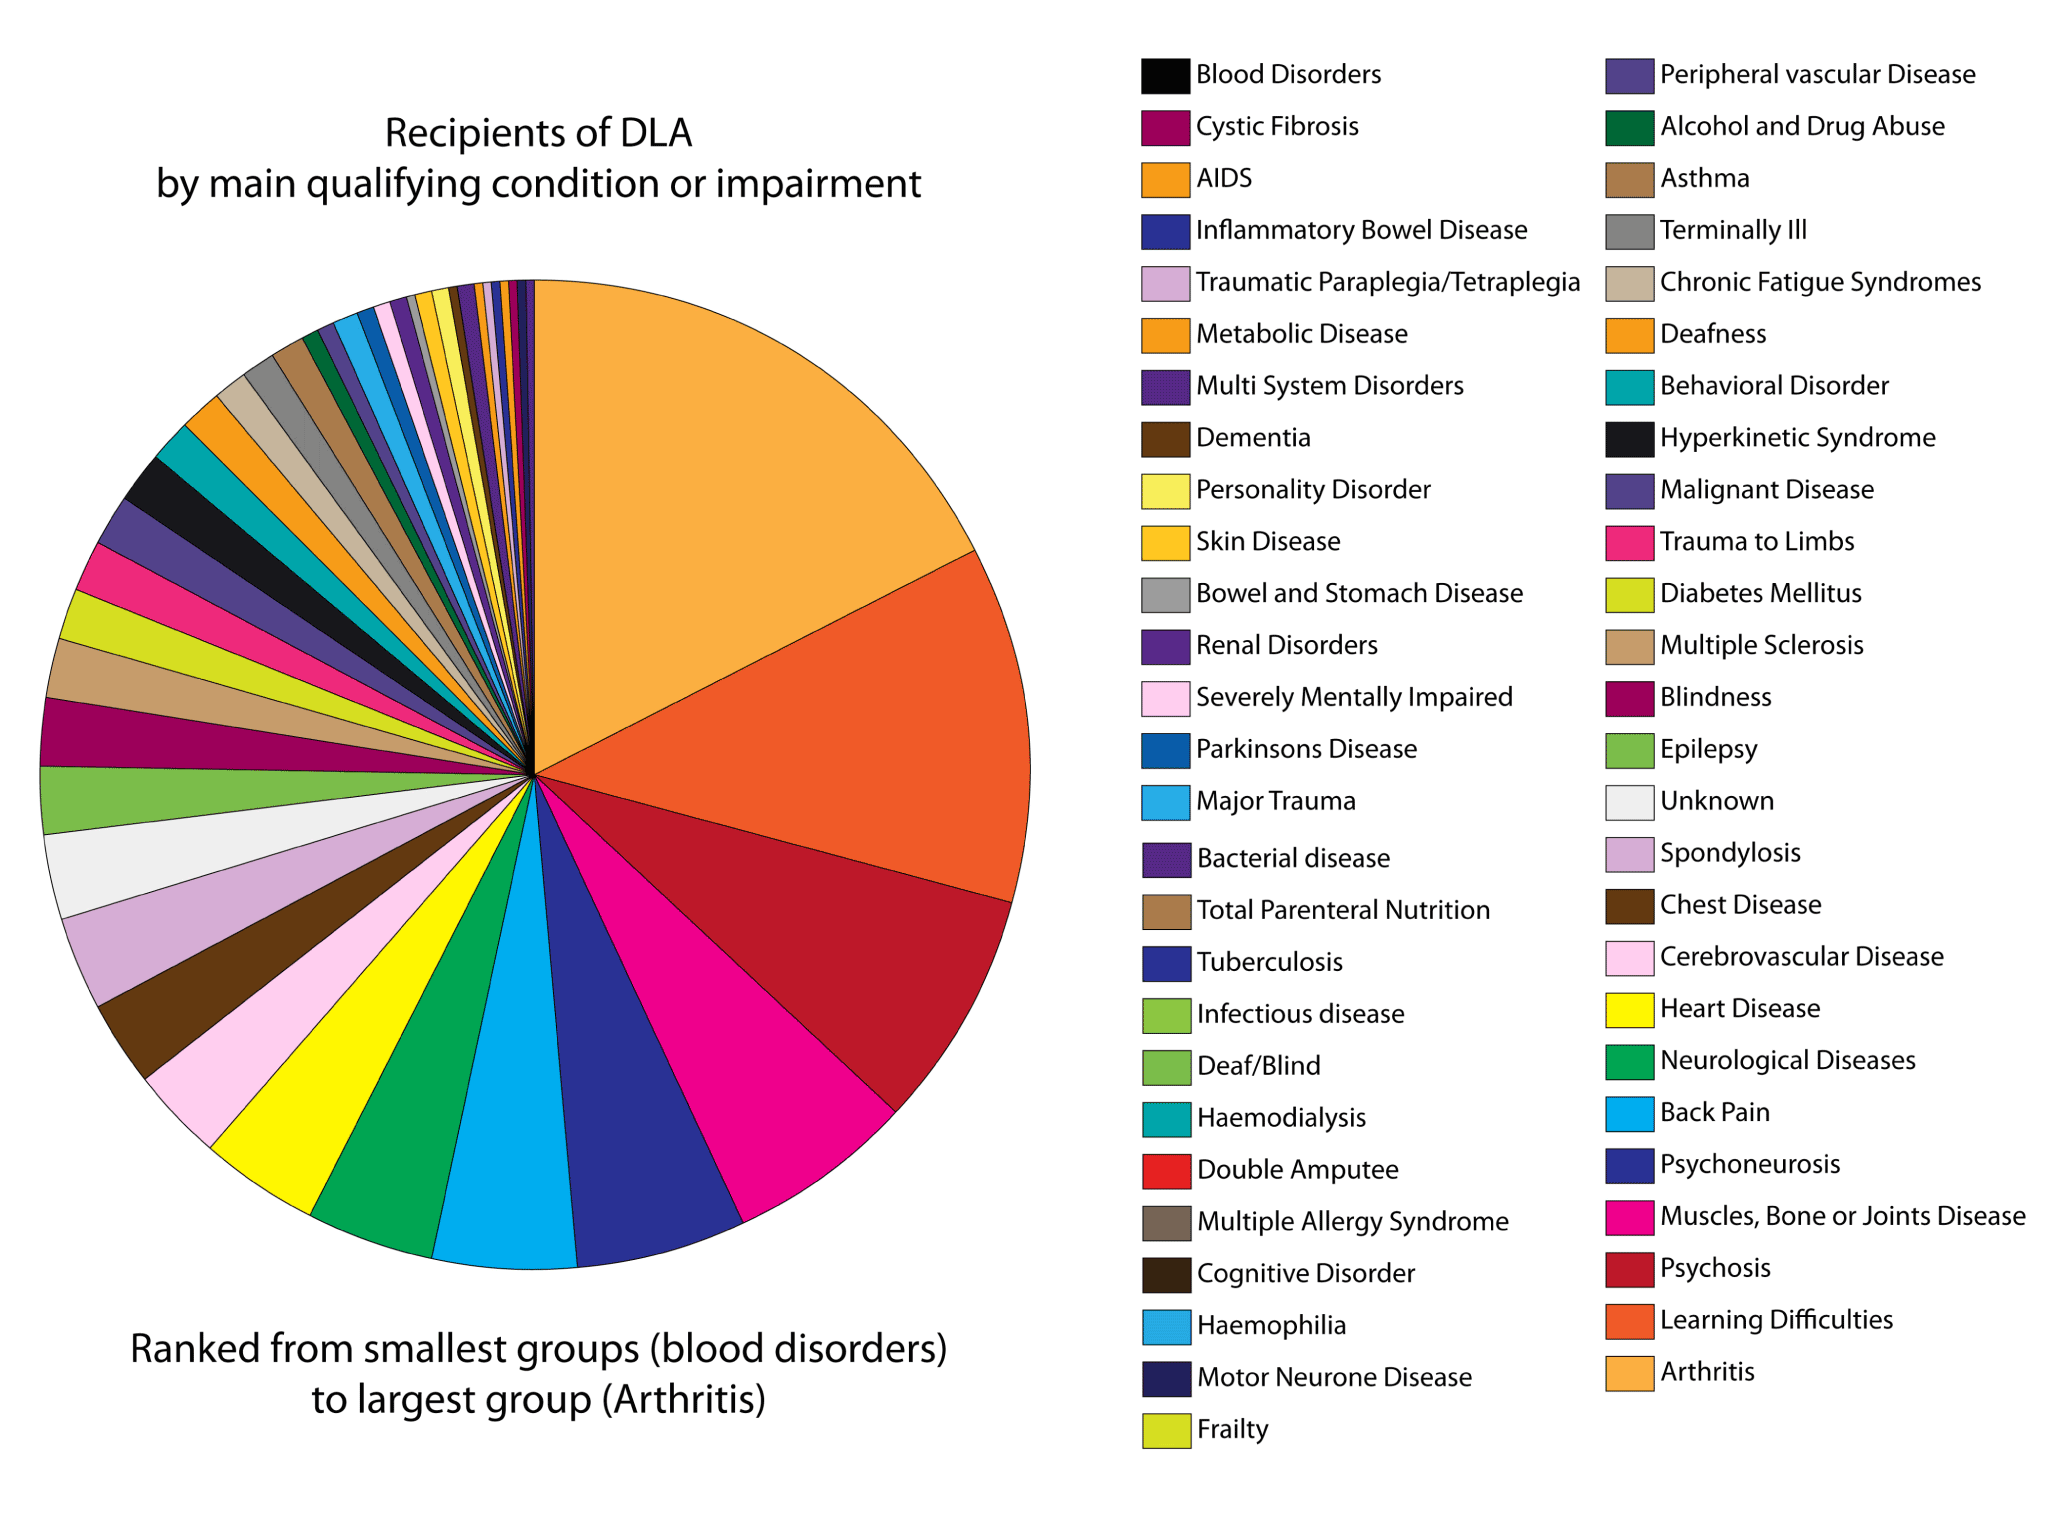 Breakdown of recipients of DLA